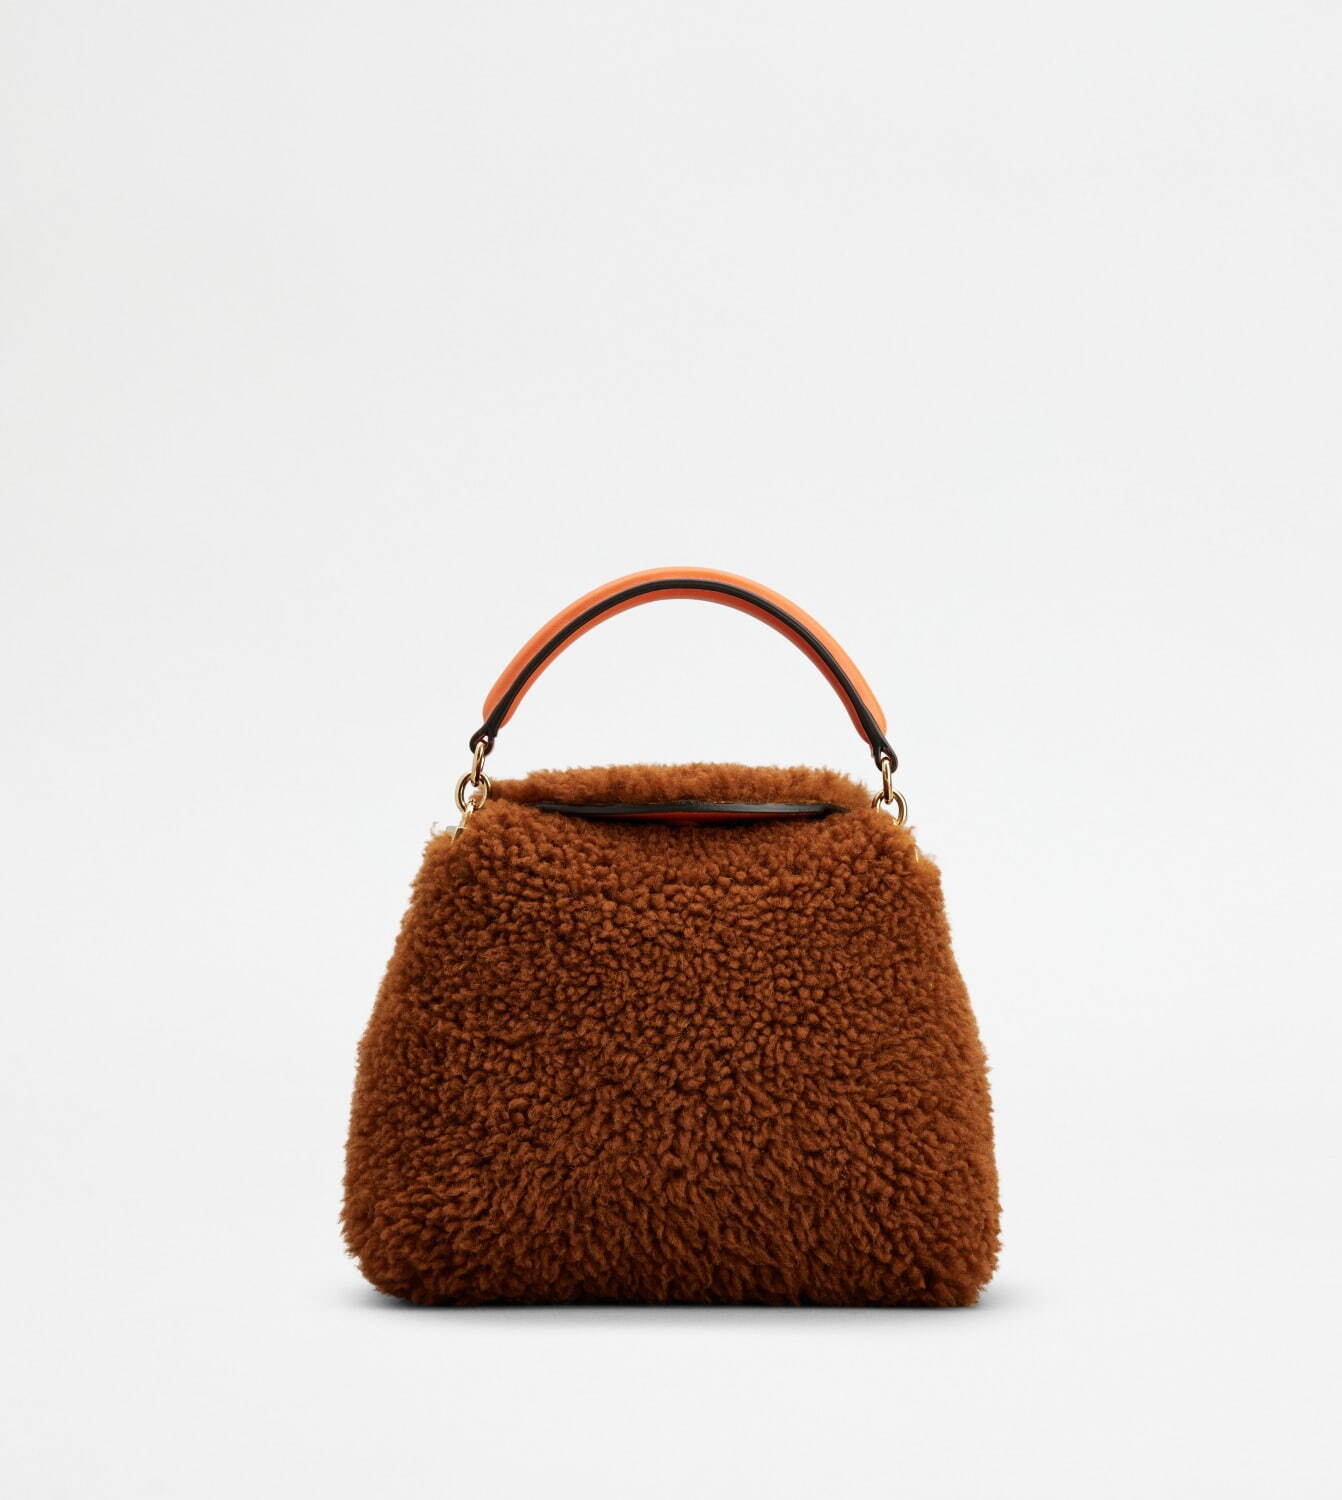 トッズ新作“オレンジ×ブラウン”の秋色モコモコ素材を配したバッグ